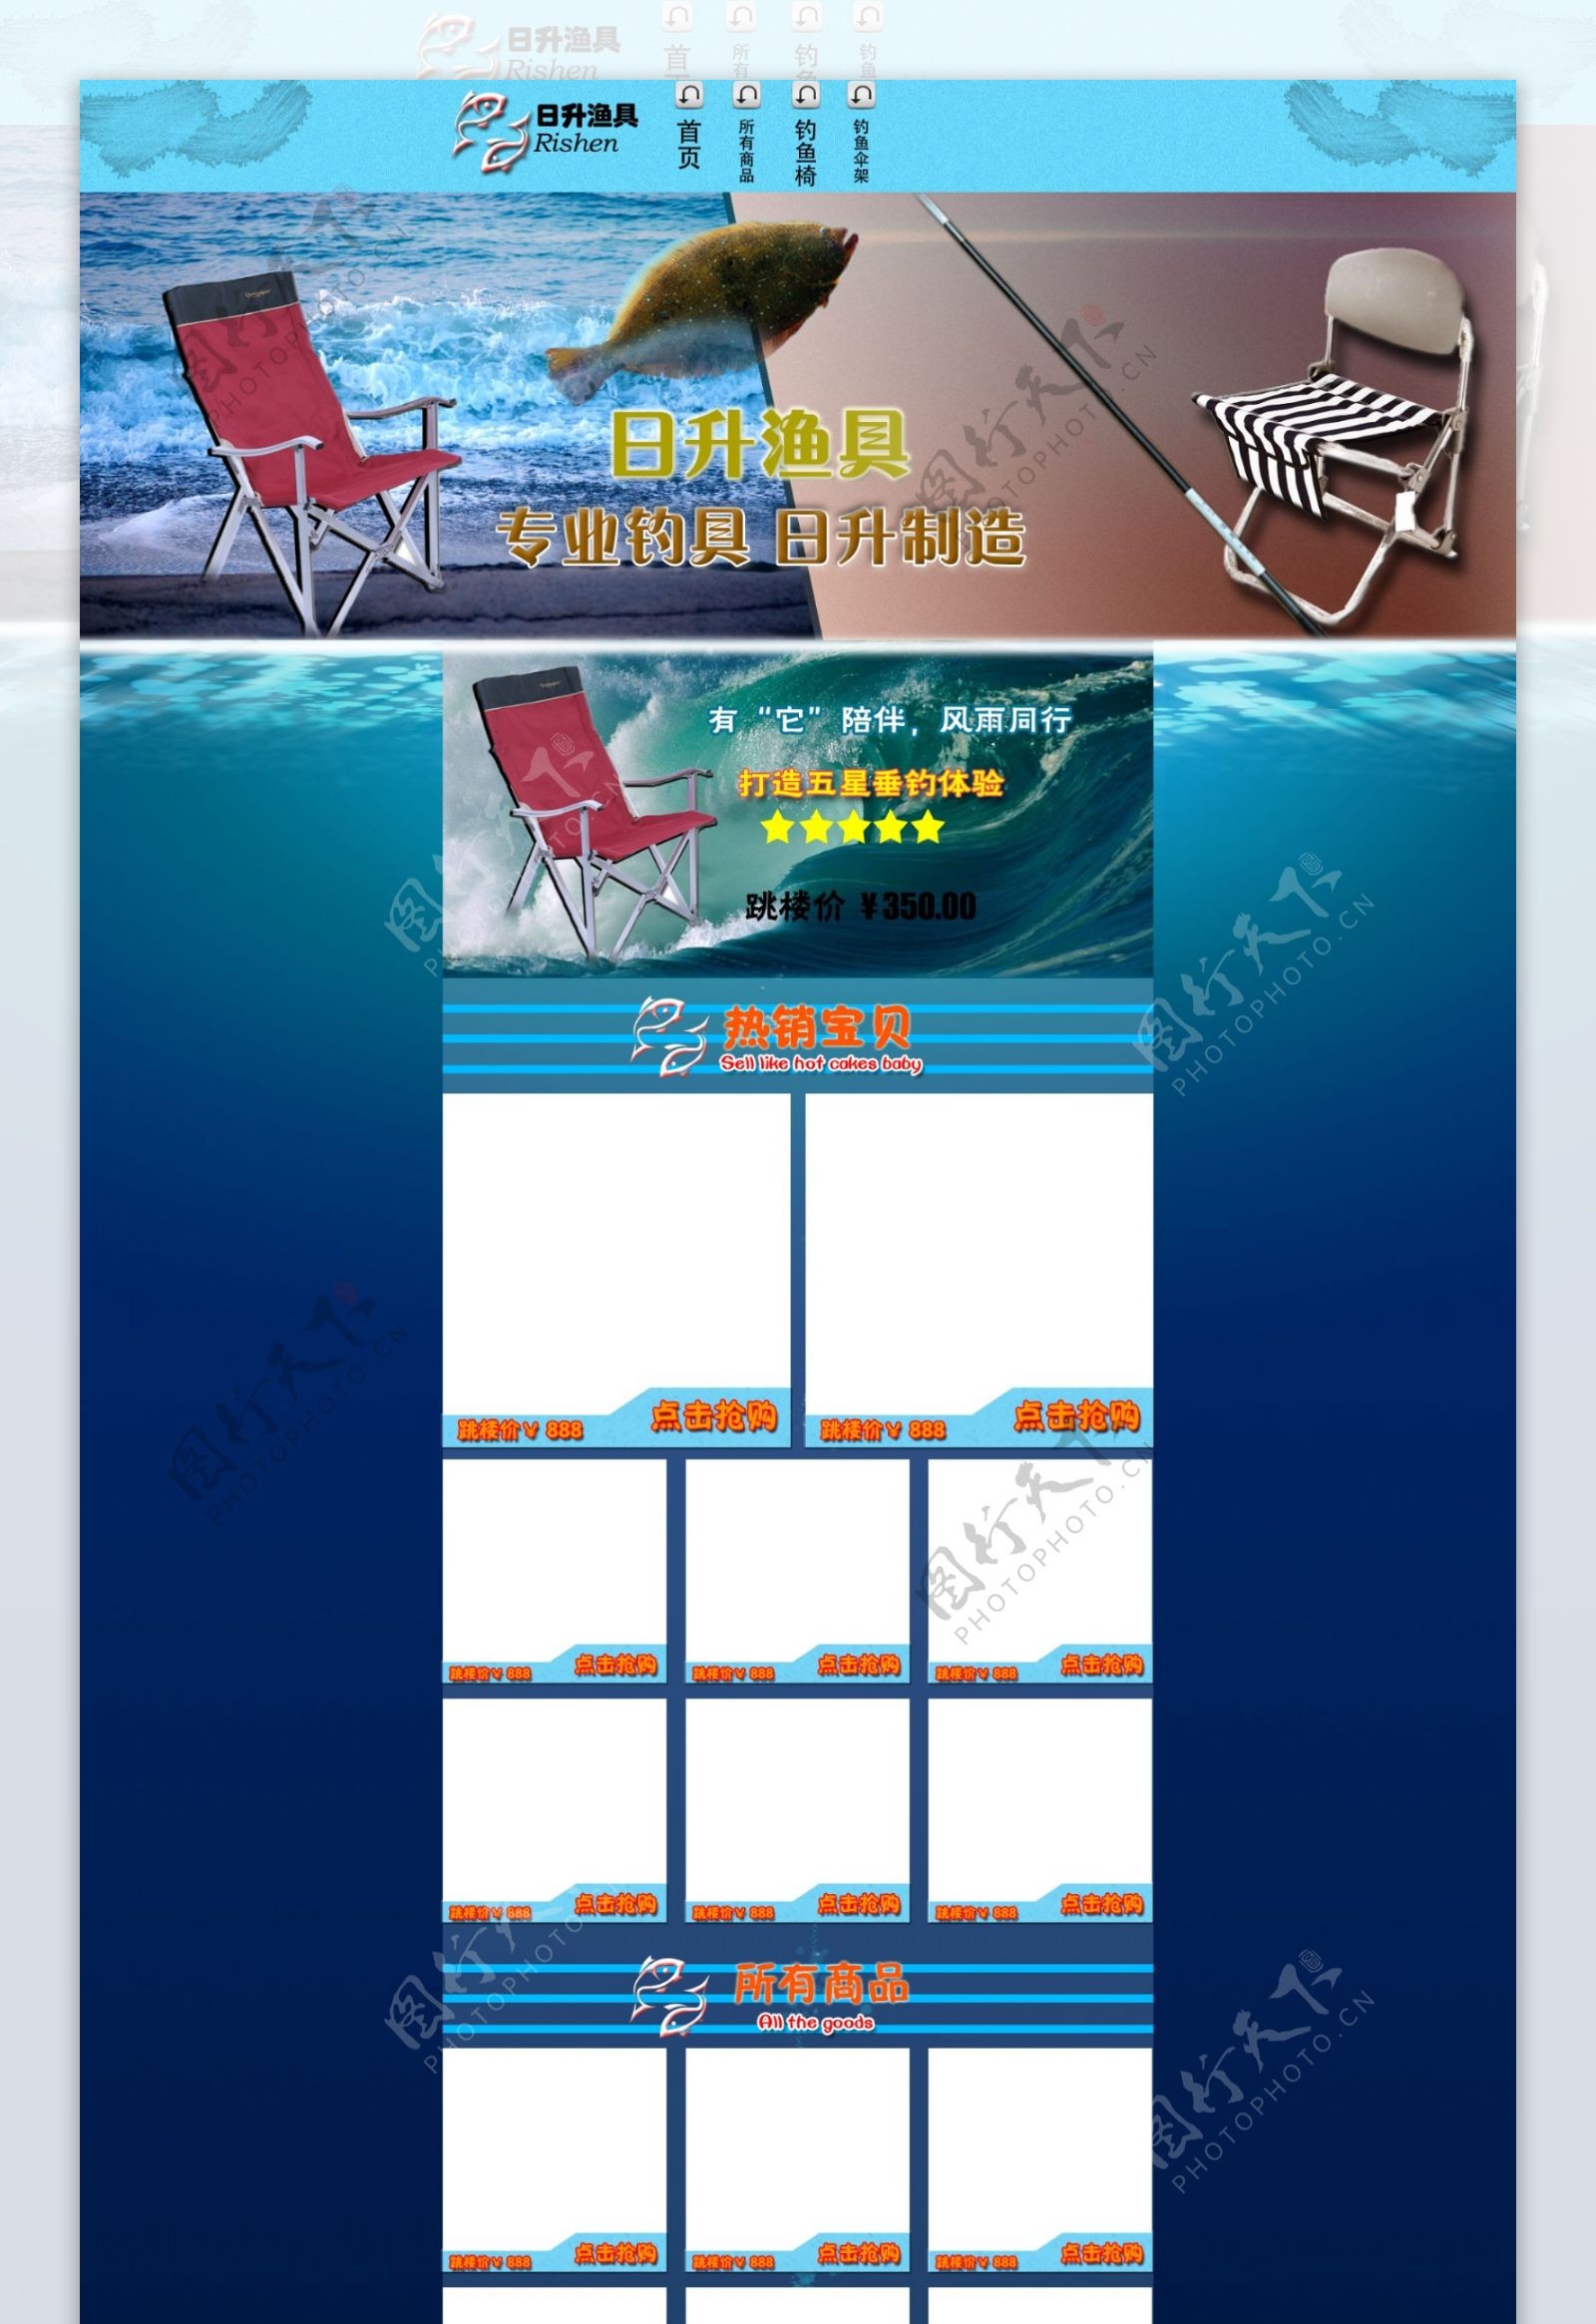 淘宝C店渔具首页模版设计